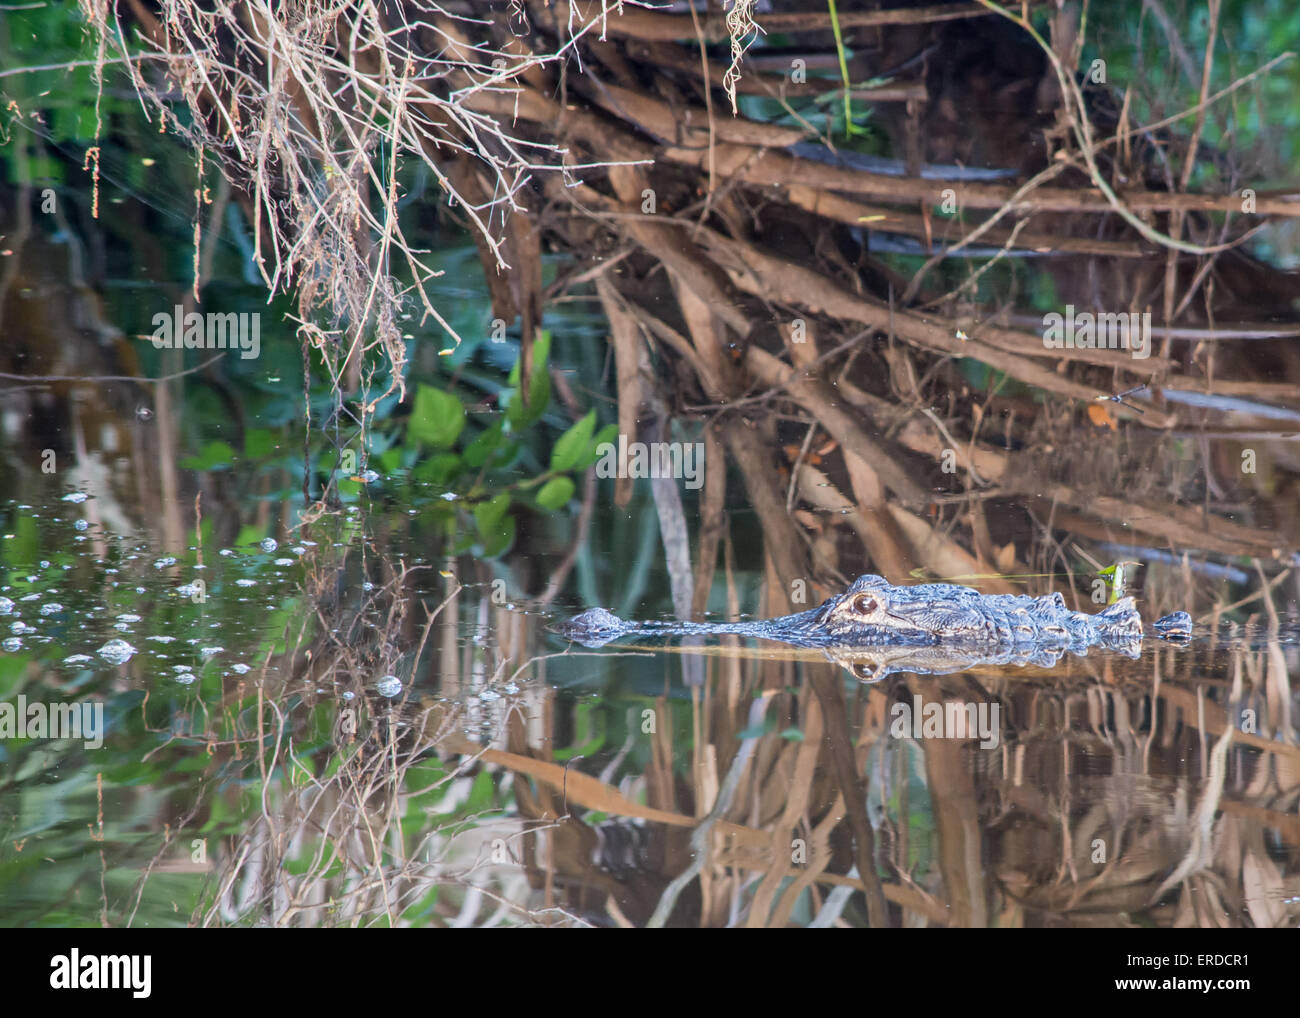 Alligator cabeza disparado en las orillas de un río. Foto de stock